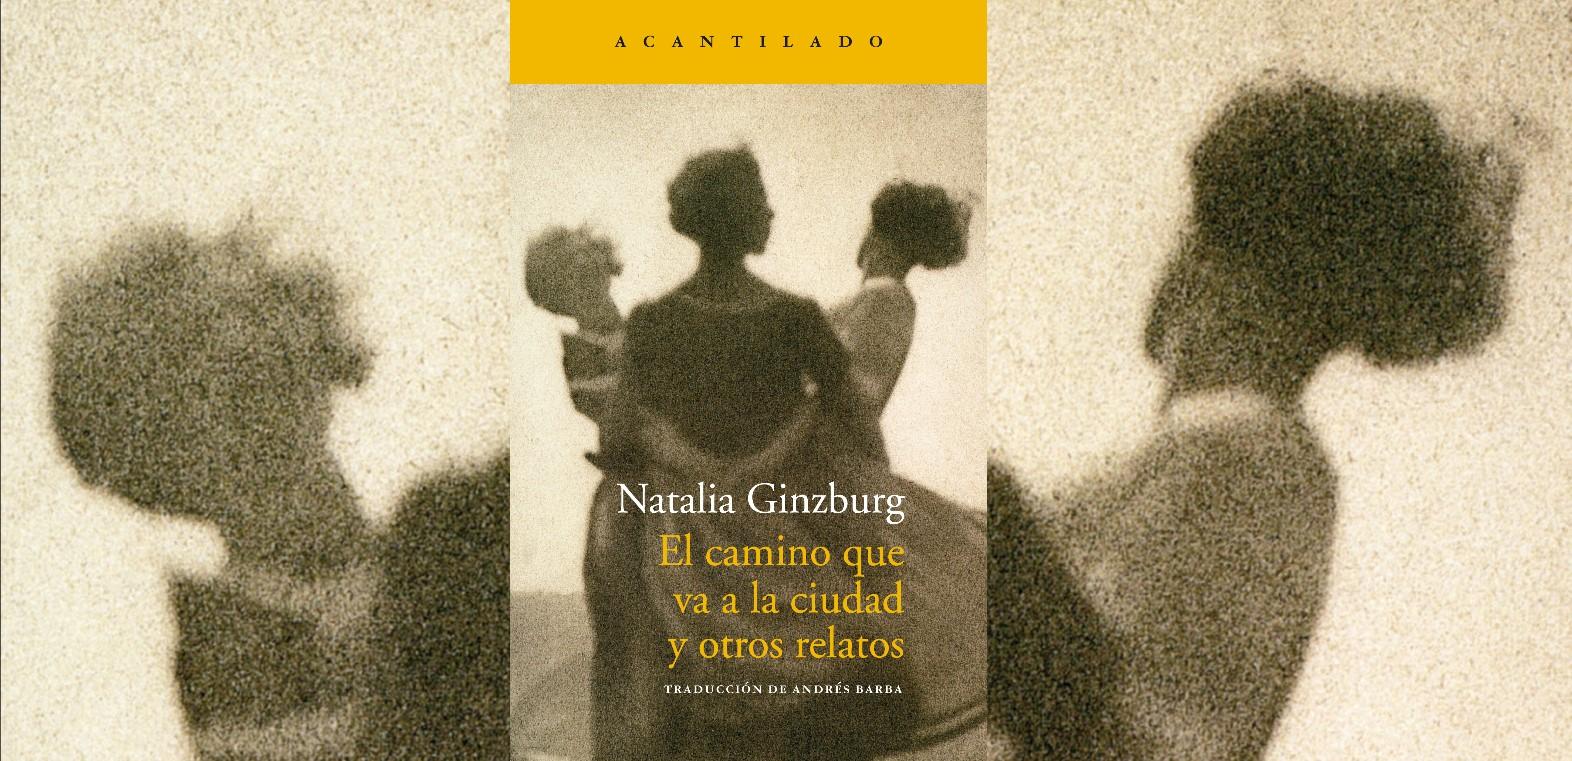 'El camino que va a la ciudad y otros relatos', de Natalia Ginzburg